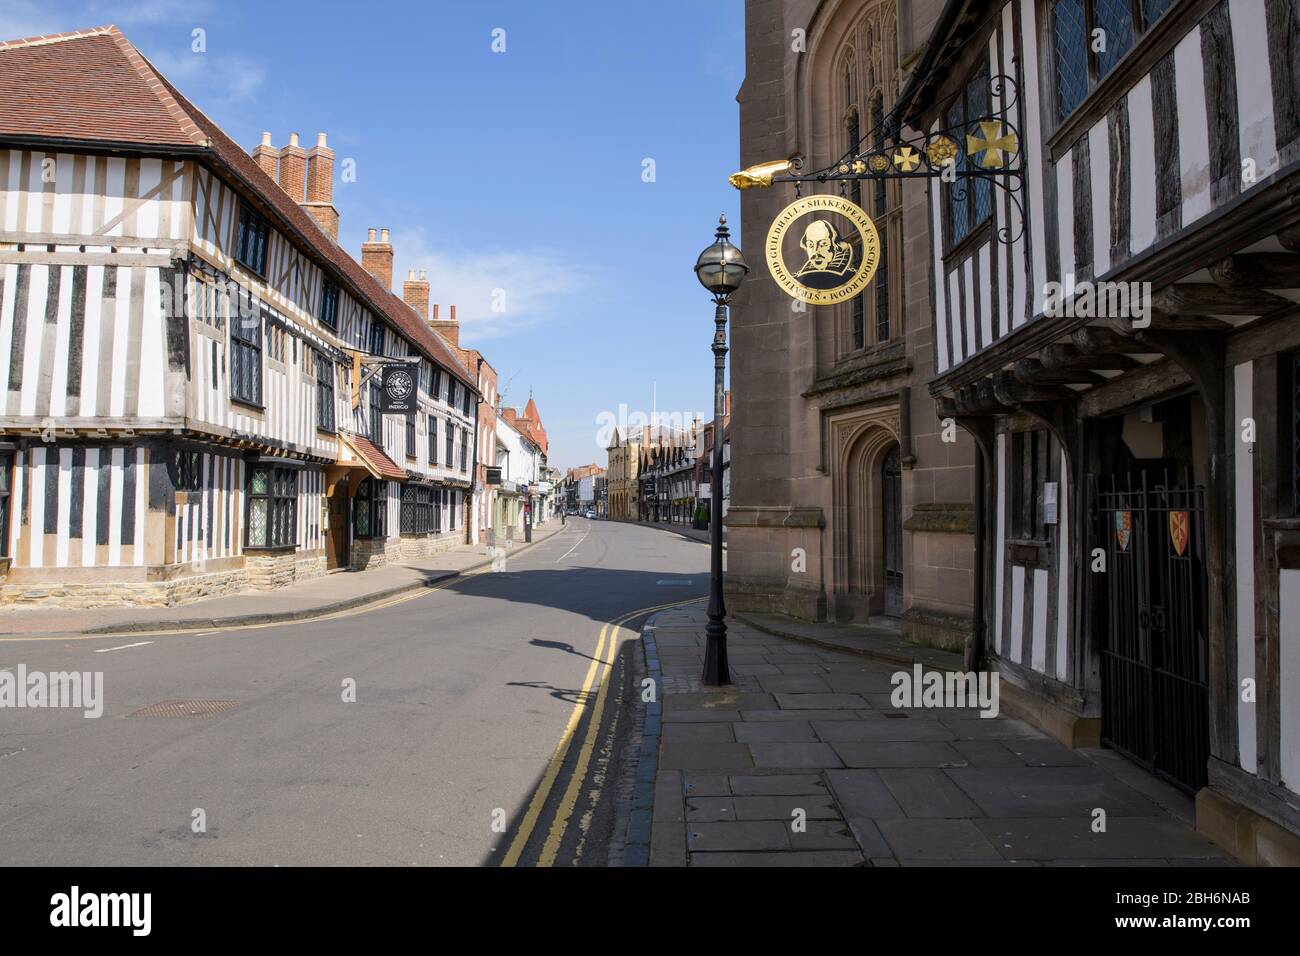 High Street en Stratford-upon-Avon, Reino Unido. La escuela y el Guildhall de Shakespeare están a la derecha. Fotografiado durante el bloqueo del Coronavirus Foto de stock